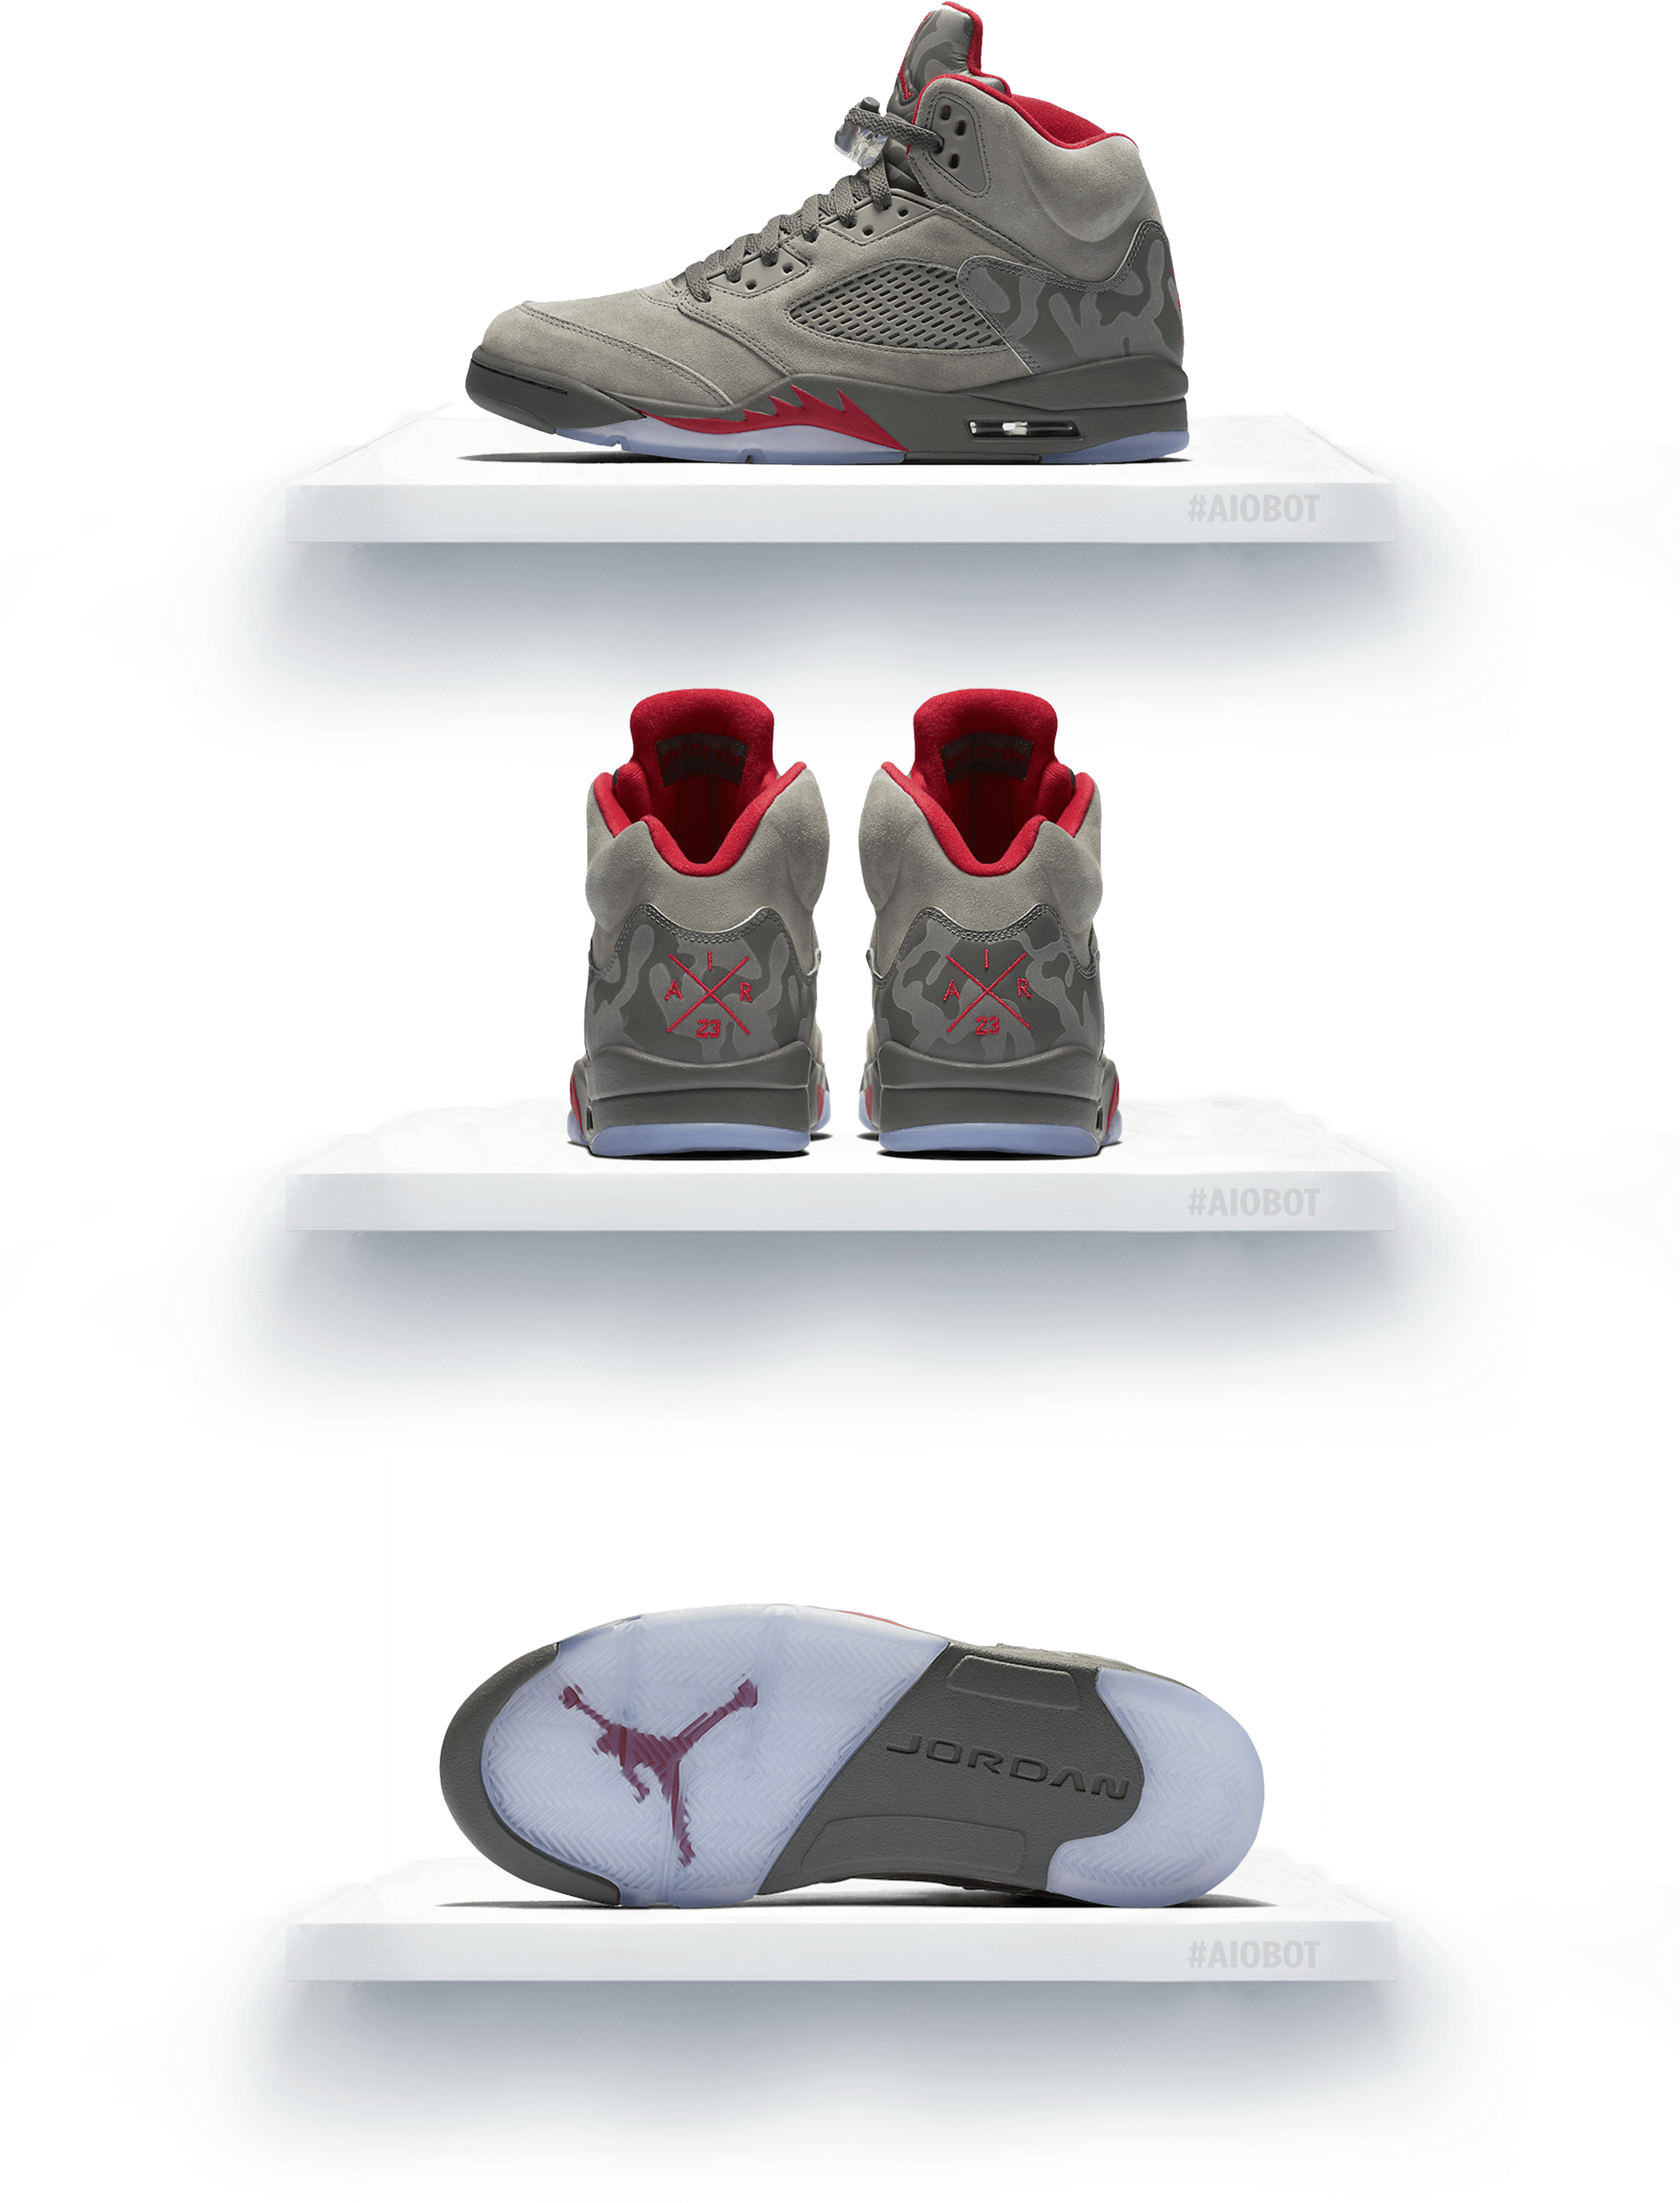 Air Jordan5 Retro Sneakers Display